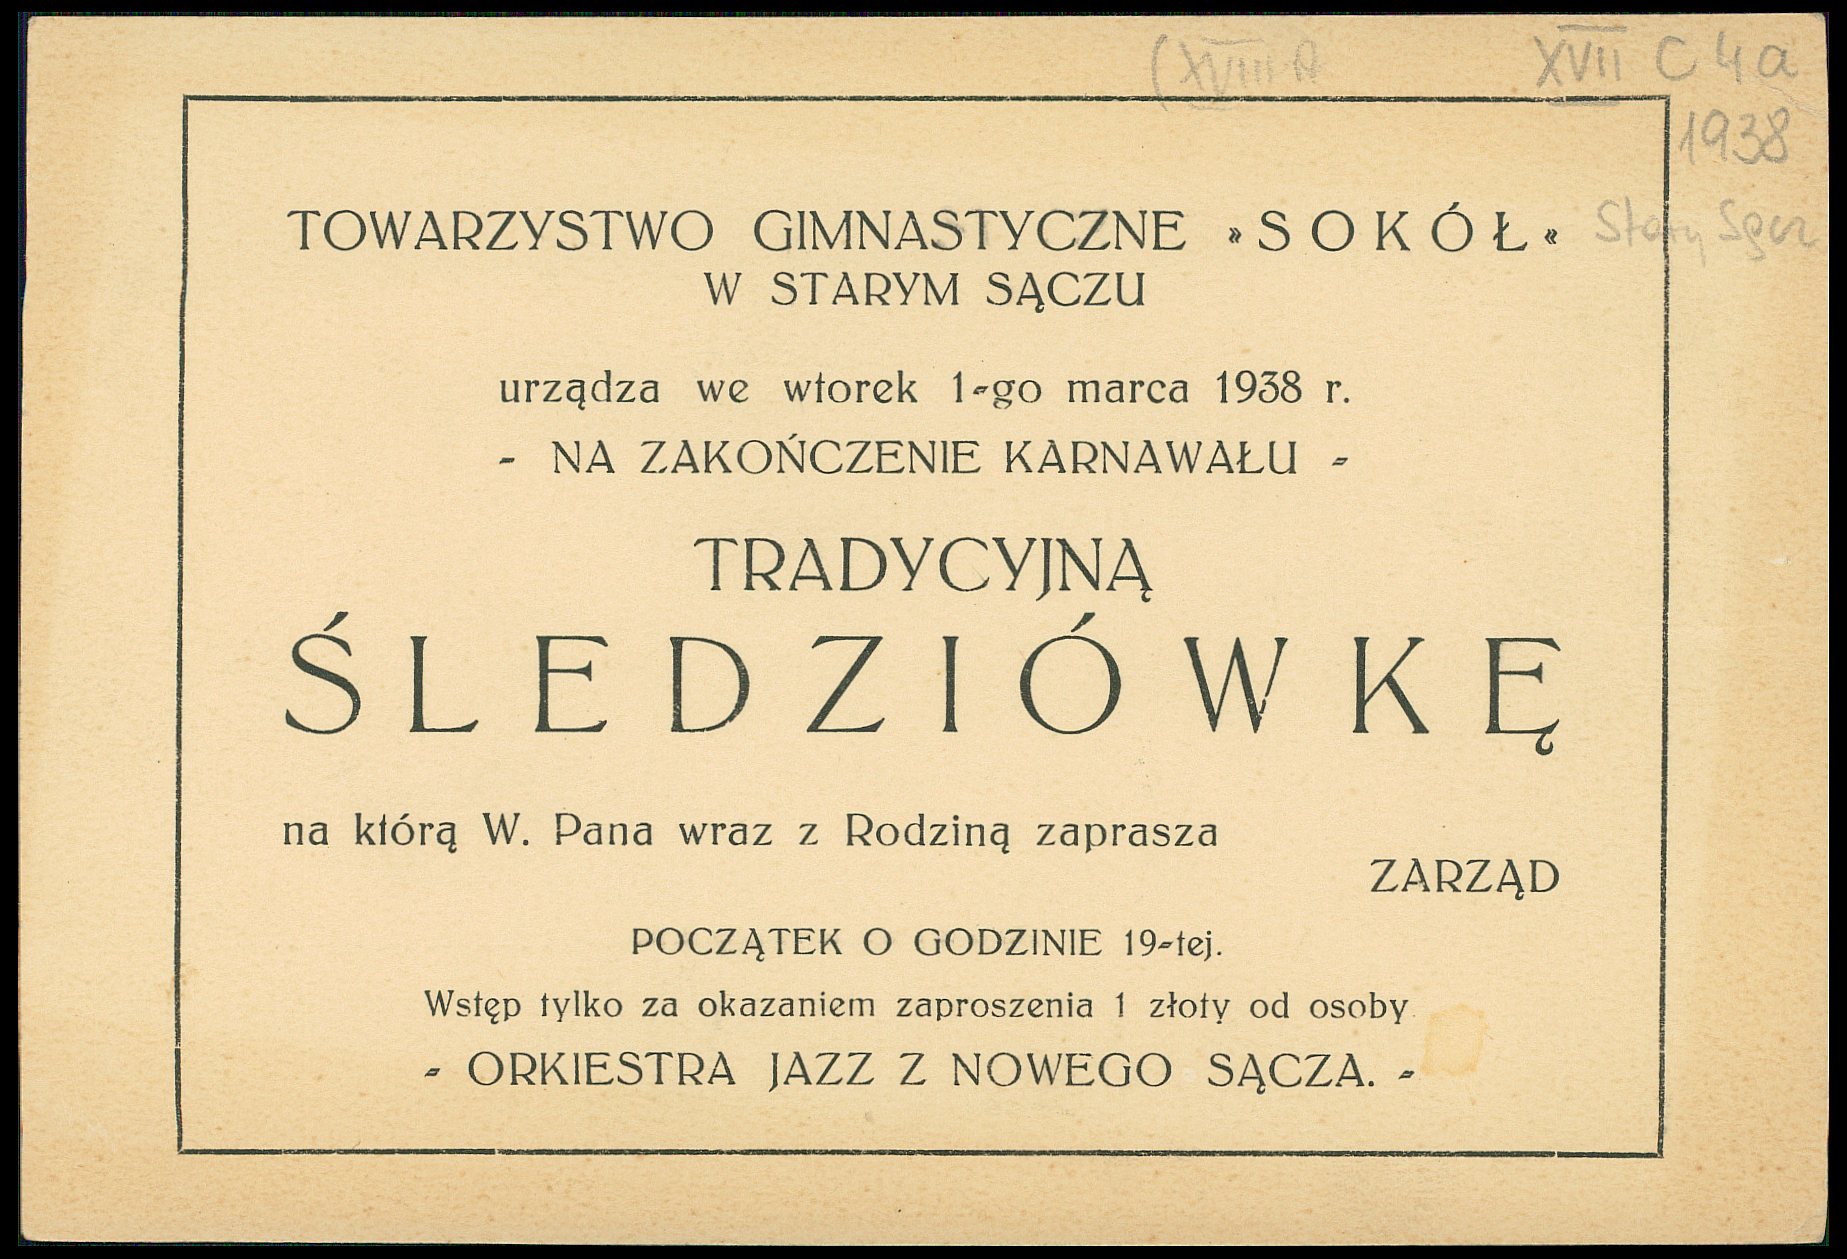 Towarzystwo Gimnastyczne "Sokół" zaprasza na tradycyjną śledziówkę 1. marca 1938 roku; polona.pl